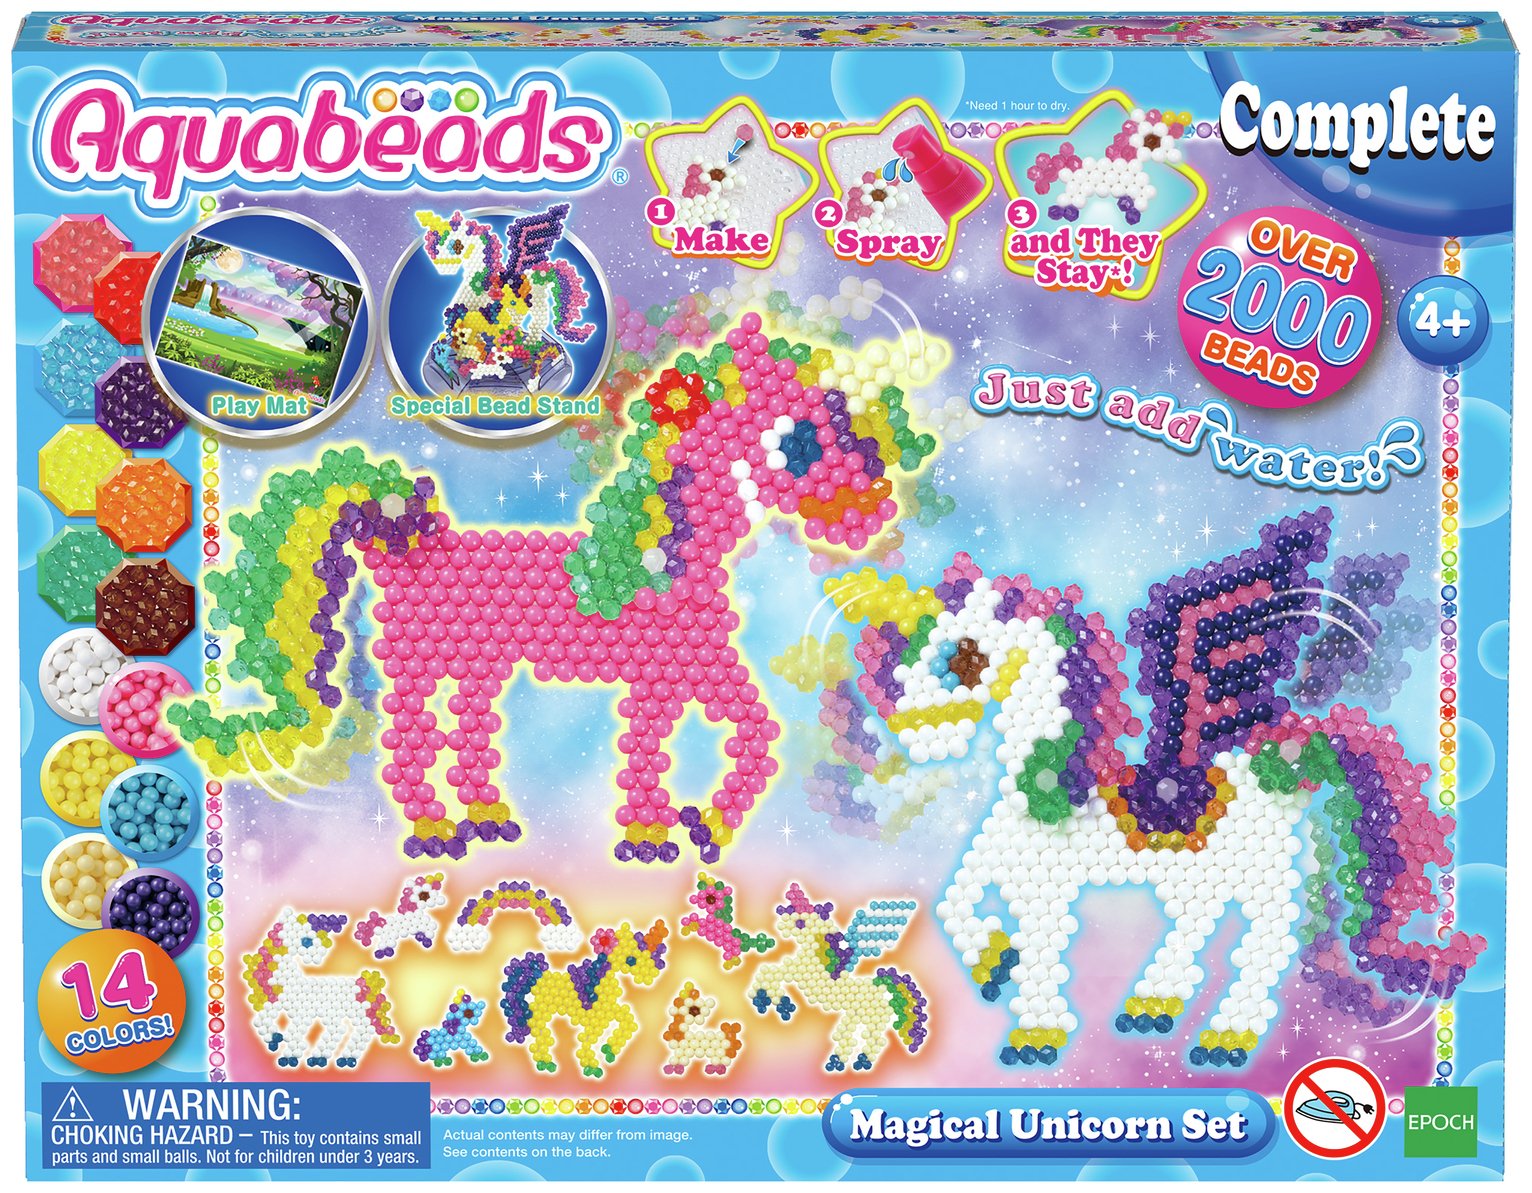 argos beads toys